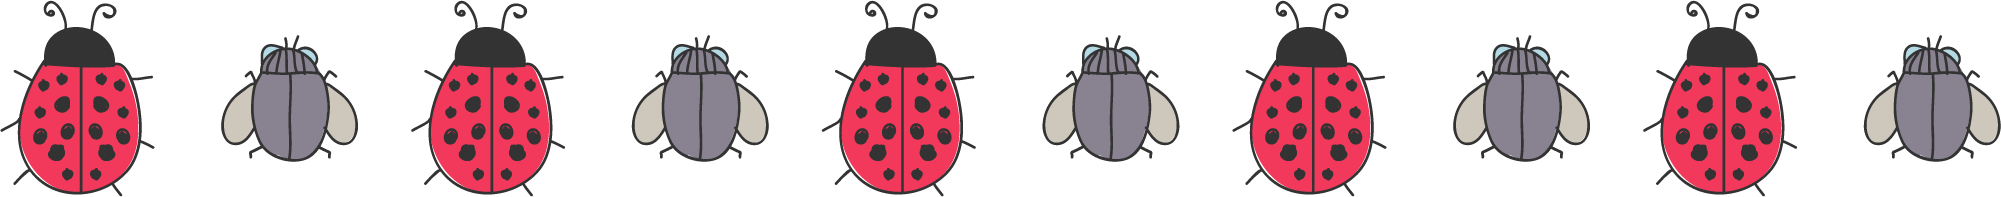 Ladybug насекомое PNG изображение прозрачный фон